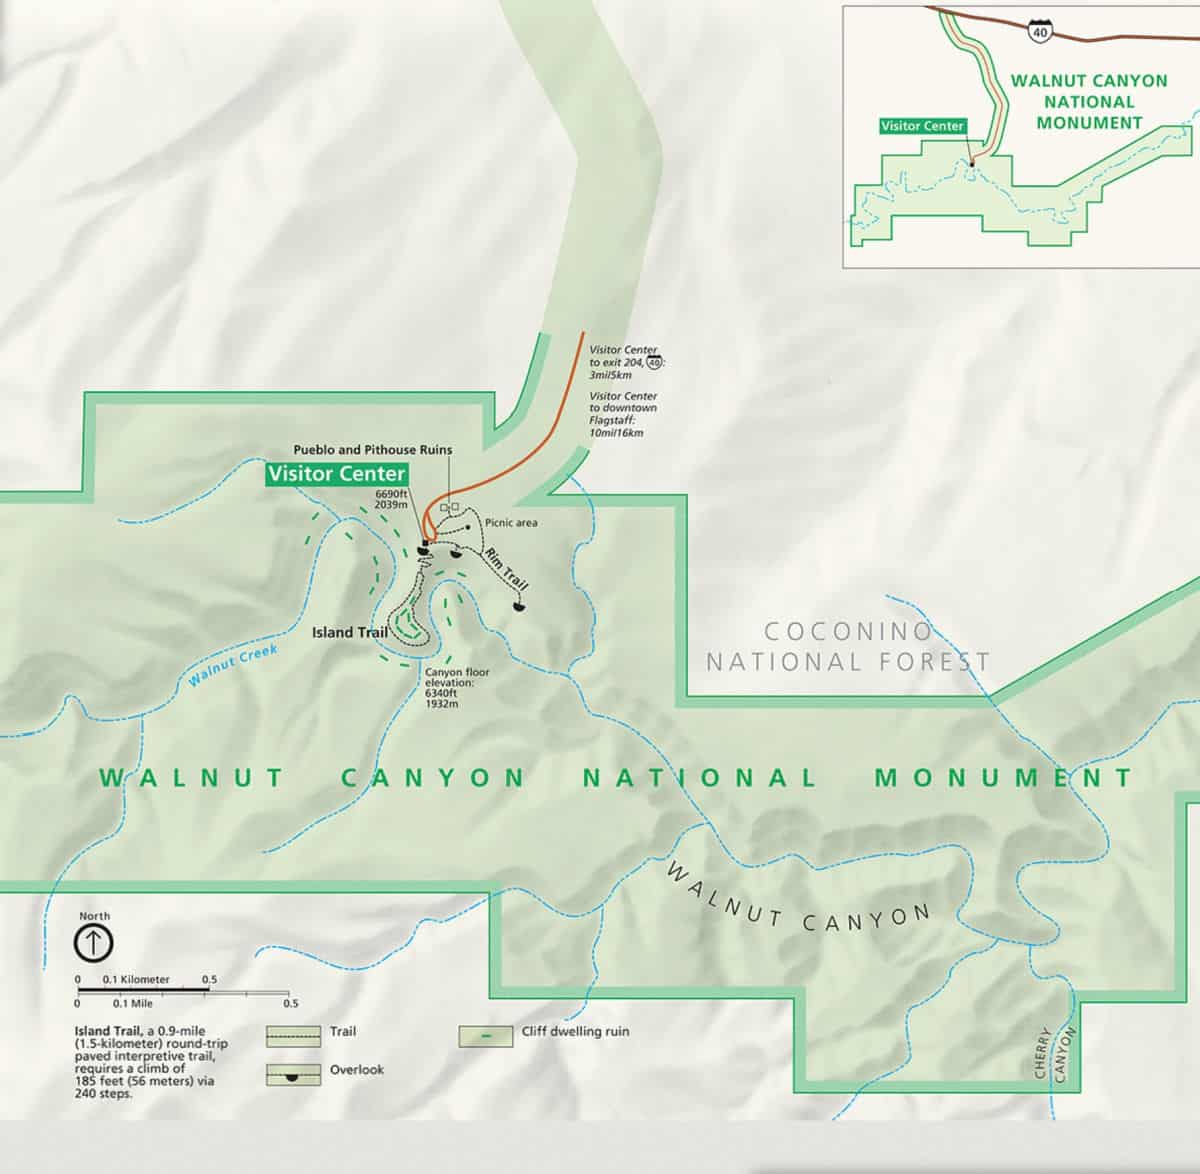 Map of Walnut Canyon National Monument, Arizona